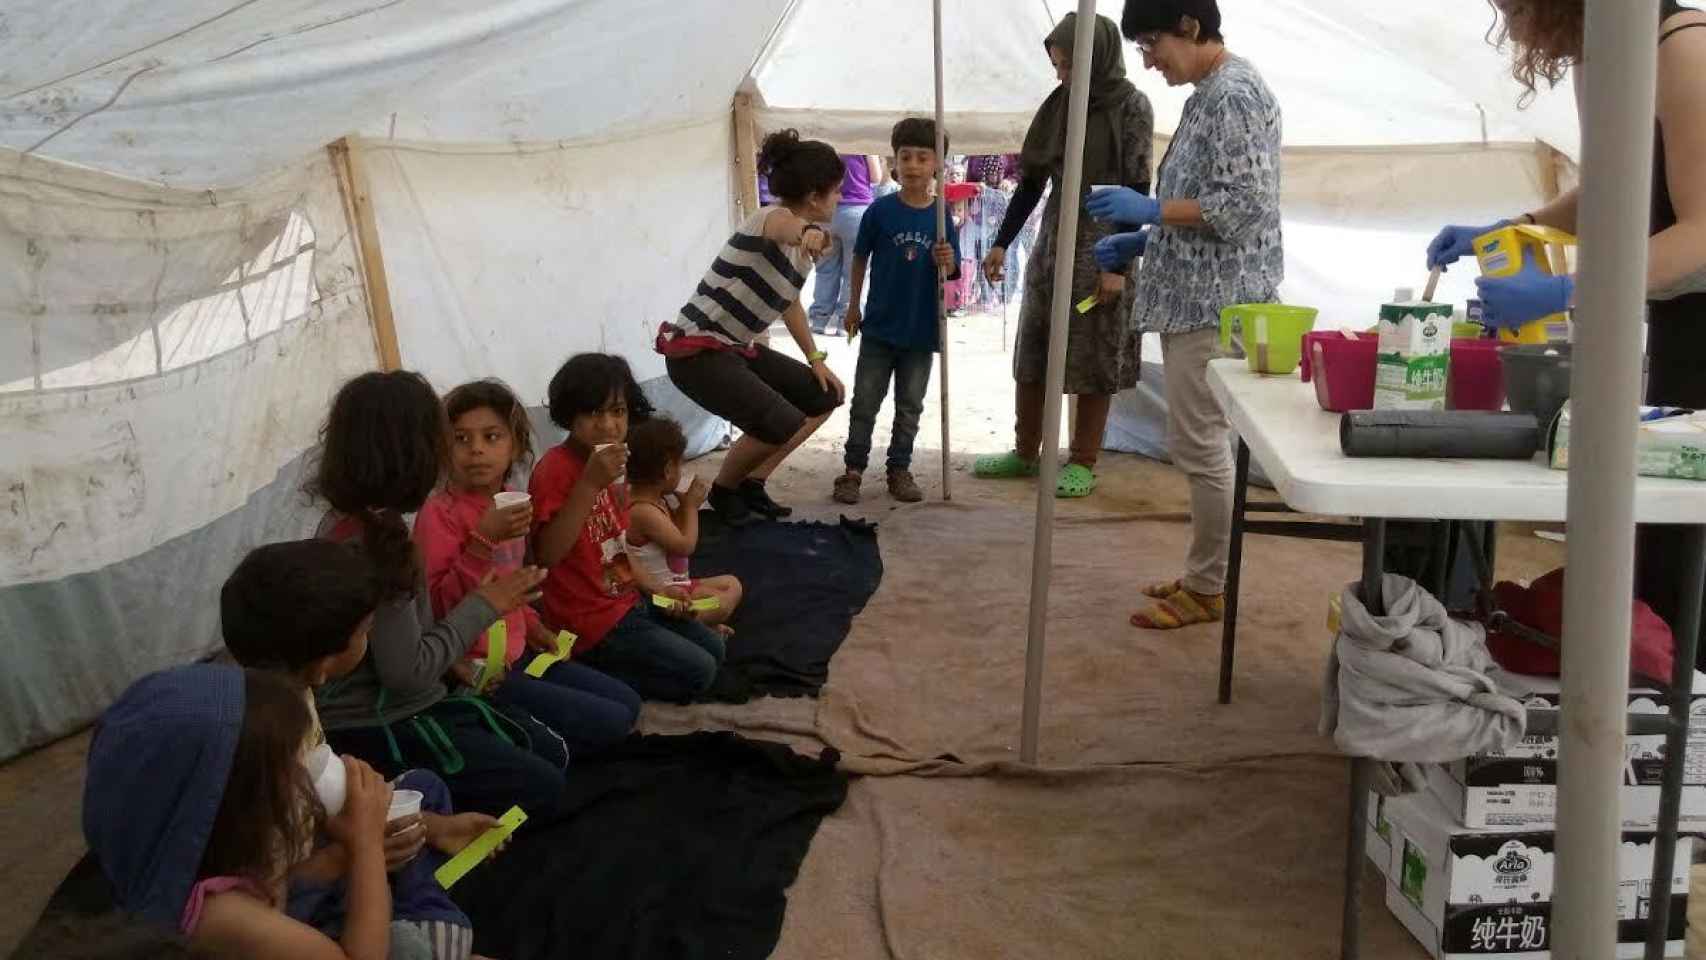 La enfermera Gemma Poca (en el centro, con guantes) ayuda a niños refugiados en un campamento.